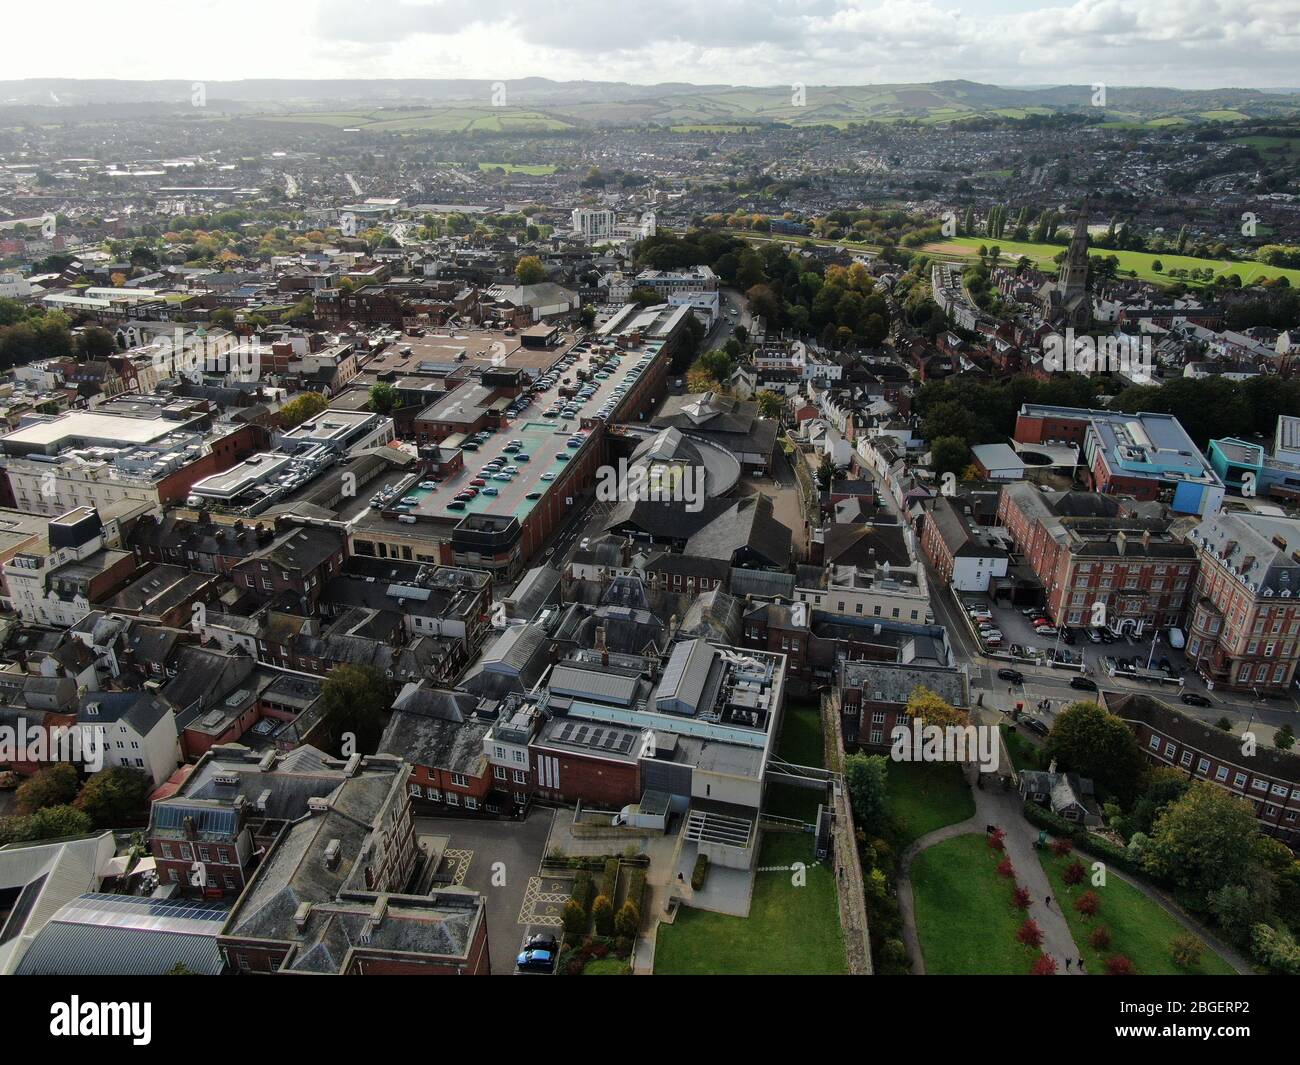 Vue aérienne du centre-ville d'Exeter montrant les jardins de Northengay et l'hôtel Rougemont au premier plan Banque D'Images